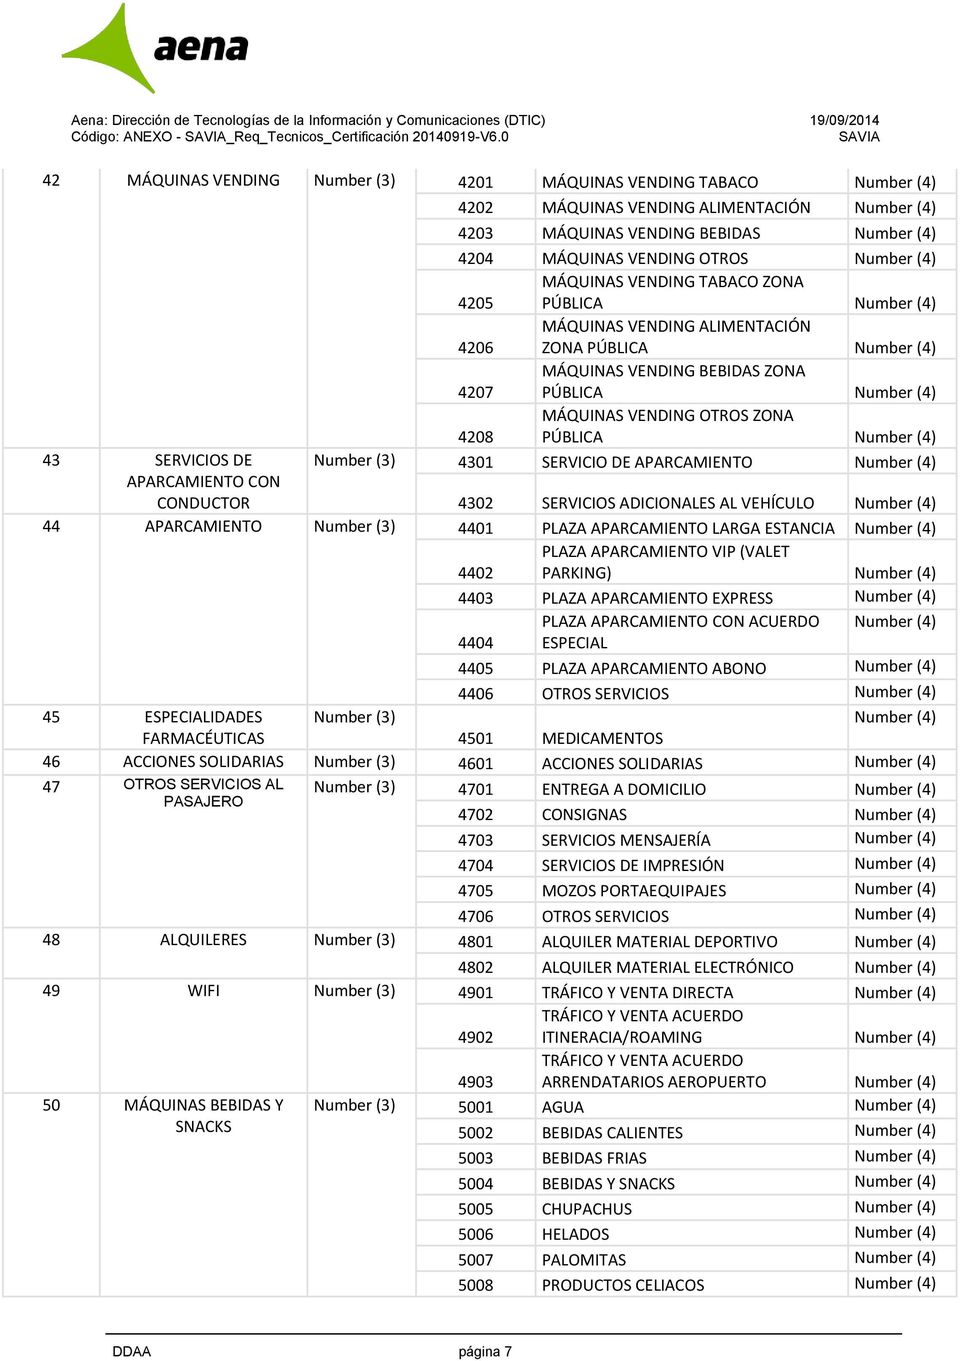 4205 MÁQUINAS VENDING TABACO ZONA PÚBLICA 4206 MÁQUINAS VENDING ALIMENTACIÓN ZONA PÚBLICA 4207 MÁQUINAS VENDING BEBIDAS ZONA PÚBLICA 4208 MÁQUINAS VENDING OTROS ZONA PÚBLICA Number (3) 4301 SERVICIO